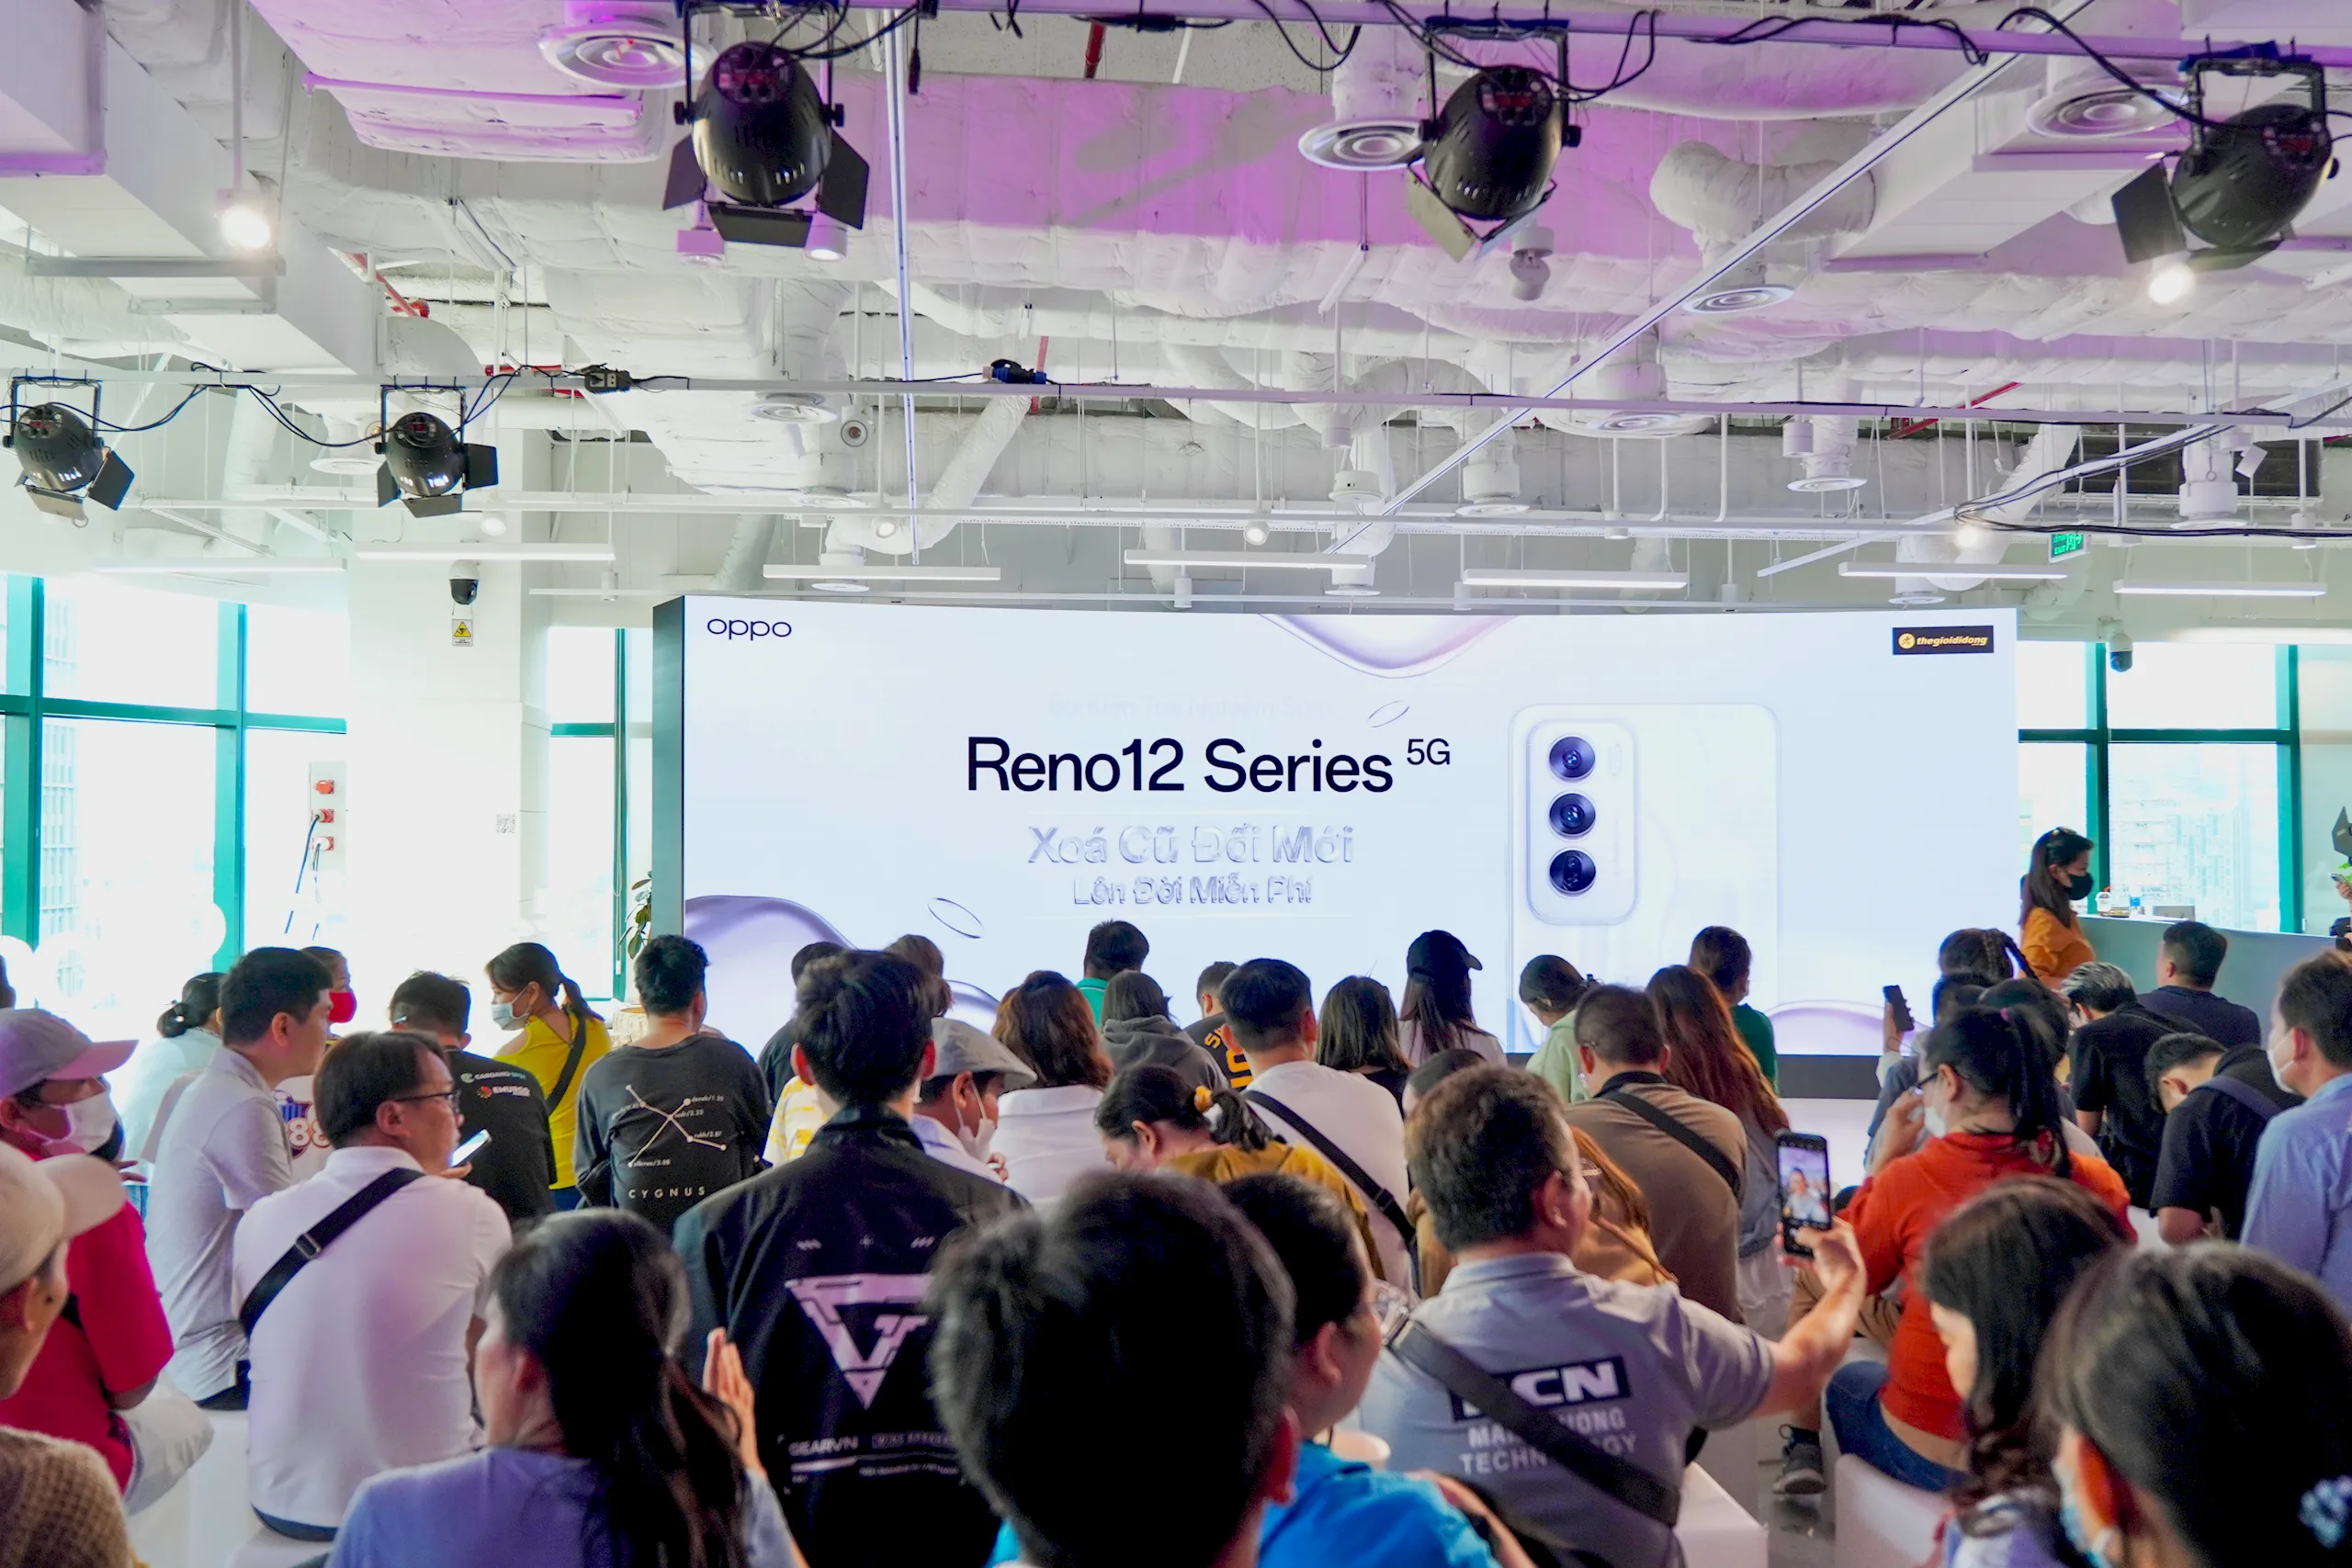 Thế Giới Di Động cùng OPPO tổ chức sự kiện trải nghiệm Reno12 series, chào đón khách hàng tới Kỷ nguyên smartphone Al